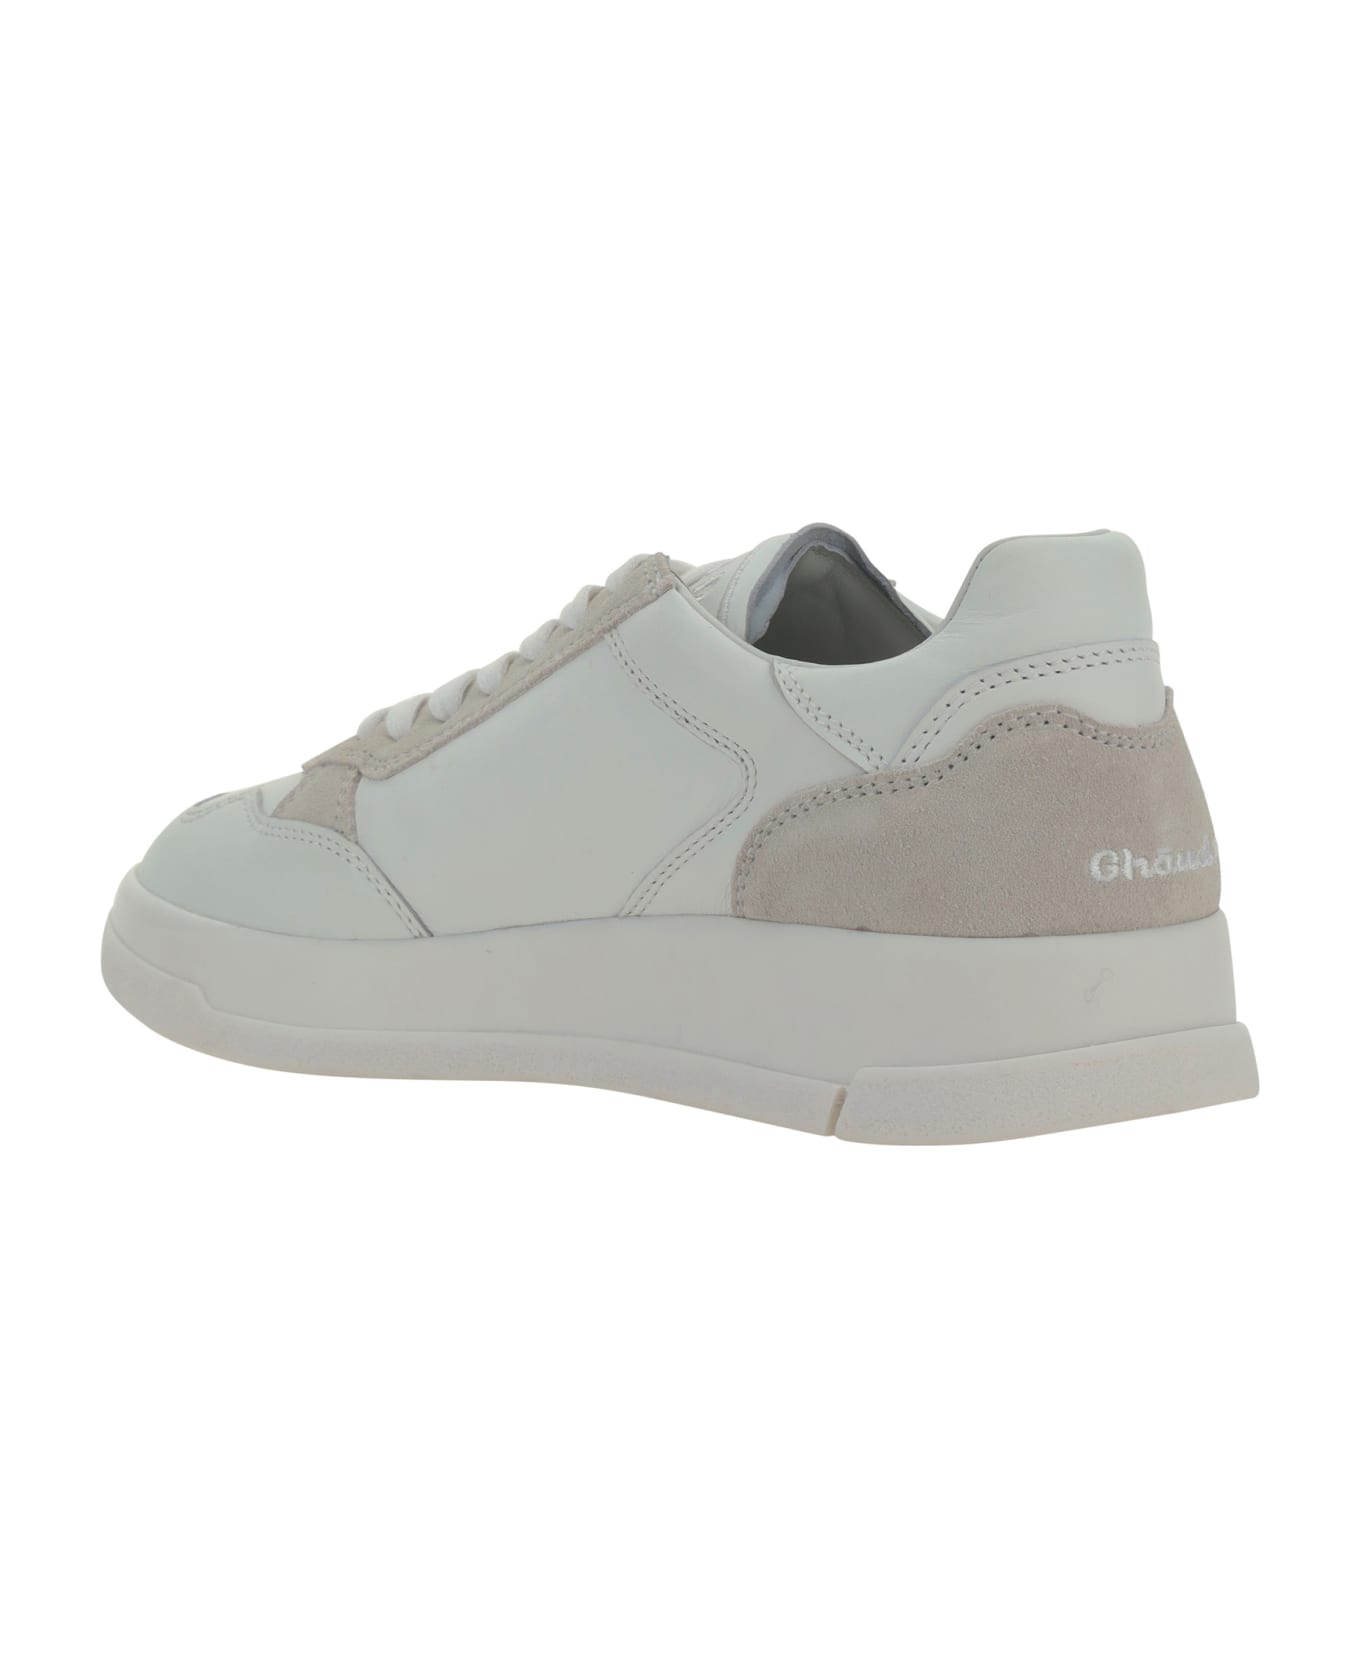 GHOUD Tweener Sneakers - White スニーカー